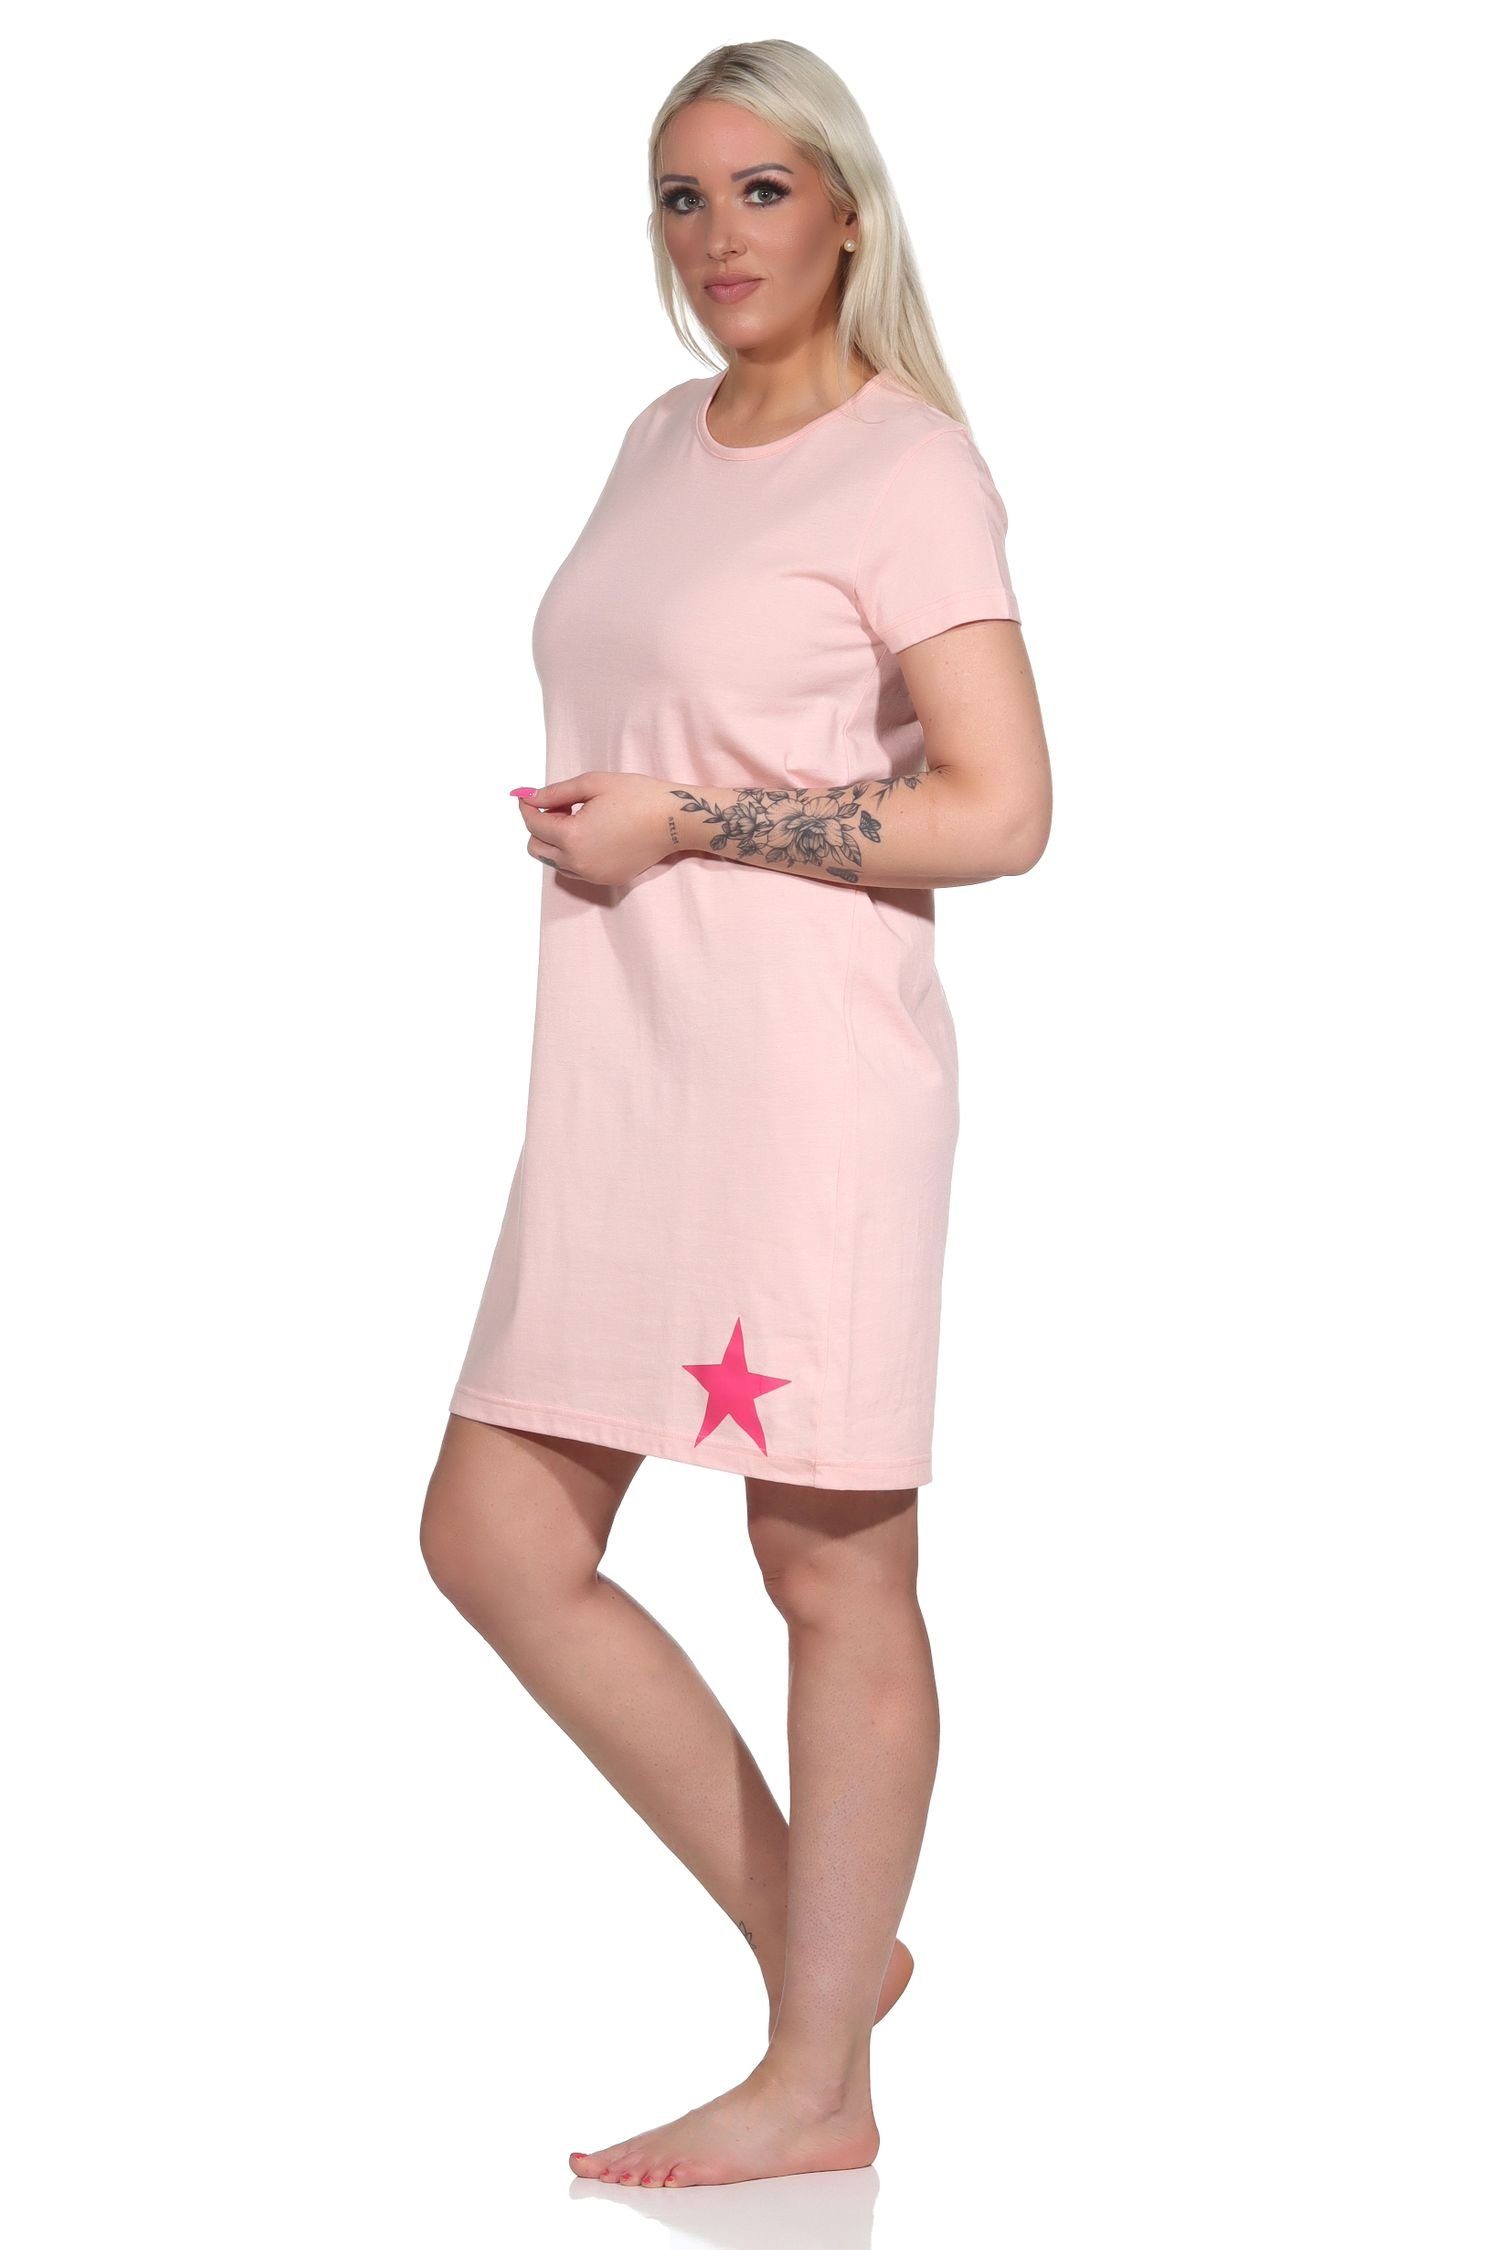 Normann Bigshirt Kurznachthemd, mit Stern-Applikation Damen schöner Nachthemd rosa